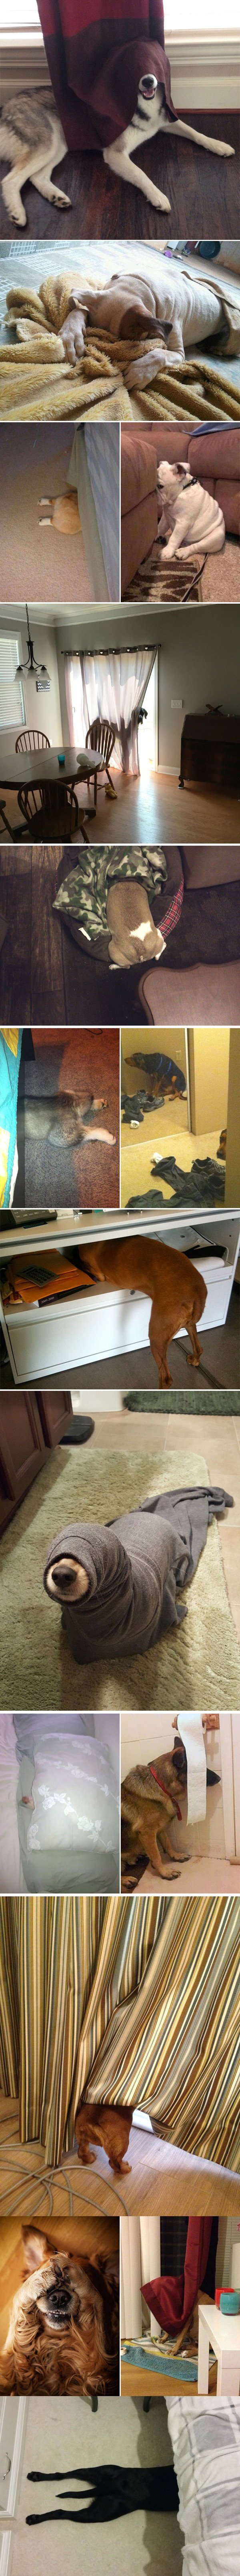 Meme_otros - Perros intentando camuflarse en casa (y ellos creen que no les vemos)